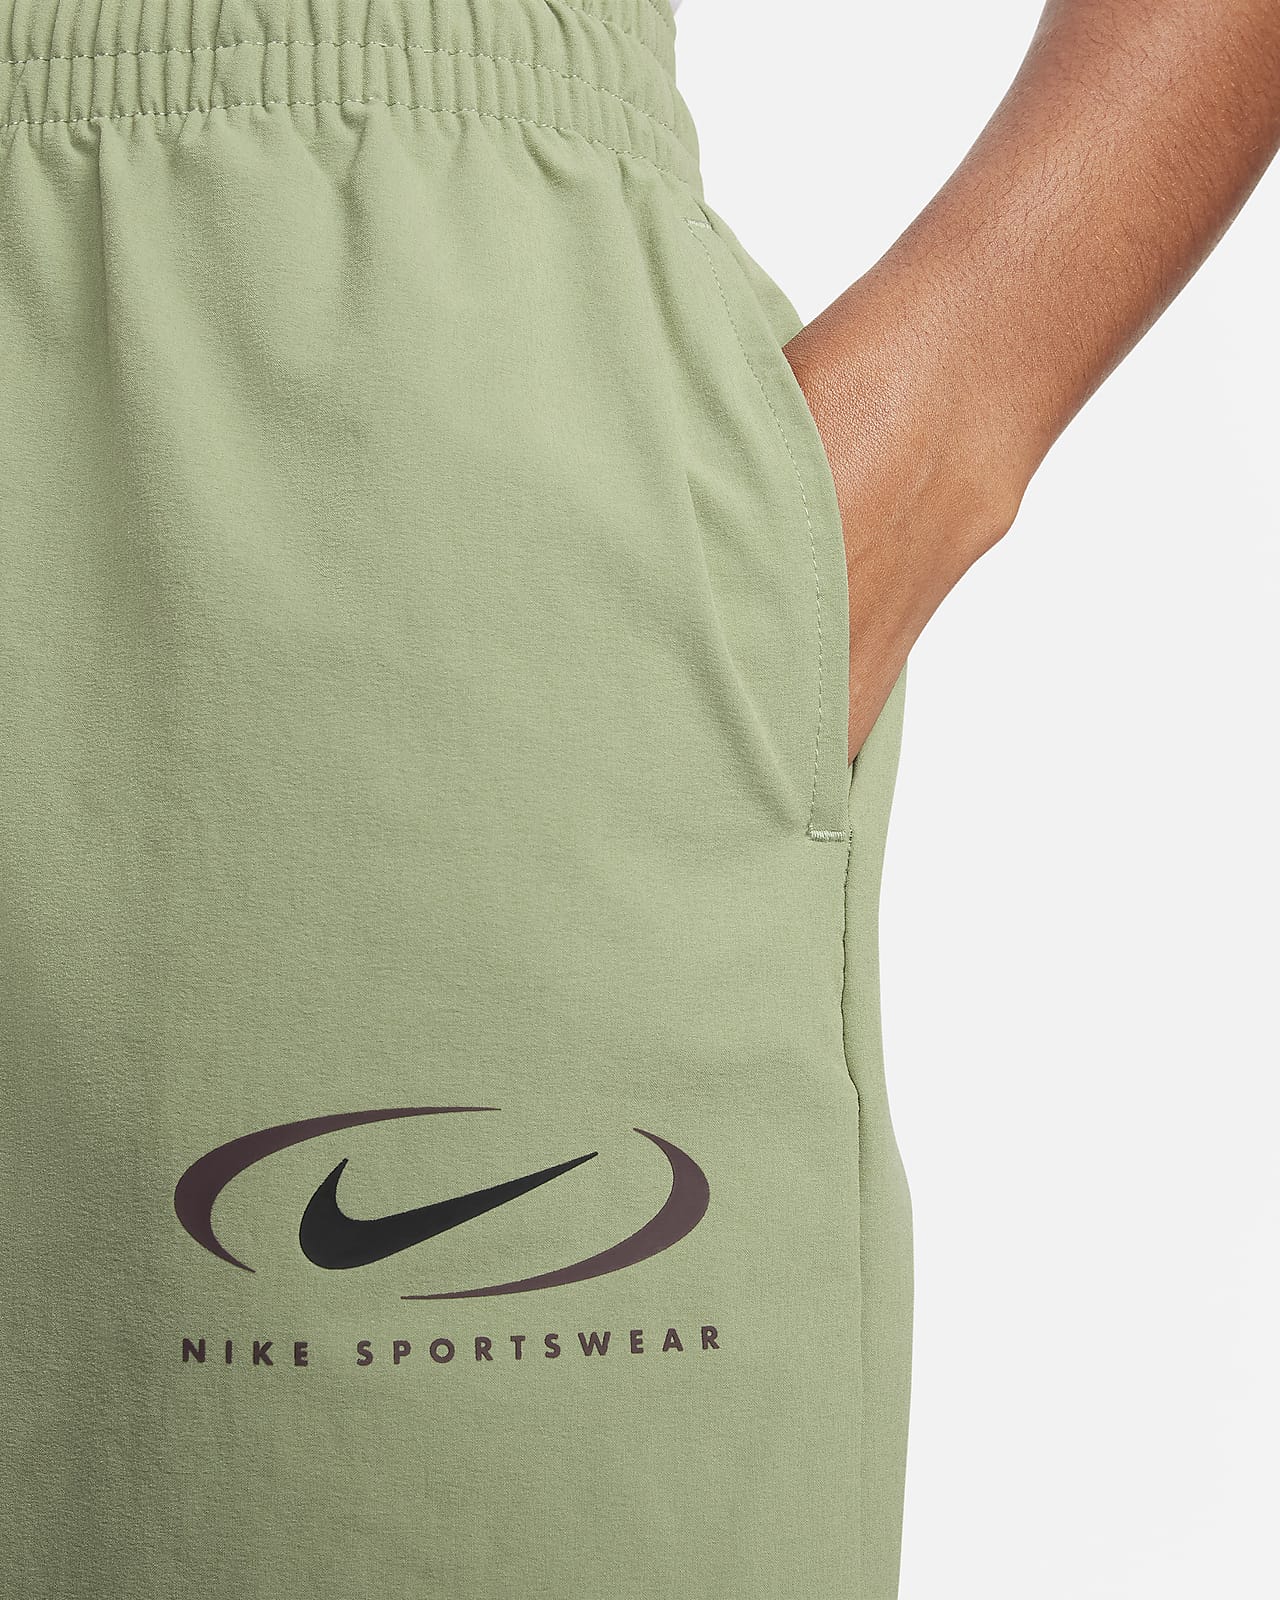 Nike Sportswear Women's Woven Joggers. Nike NL